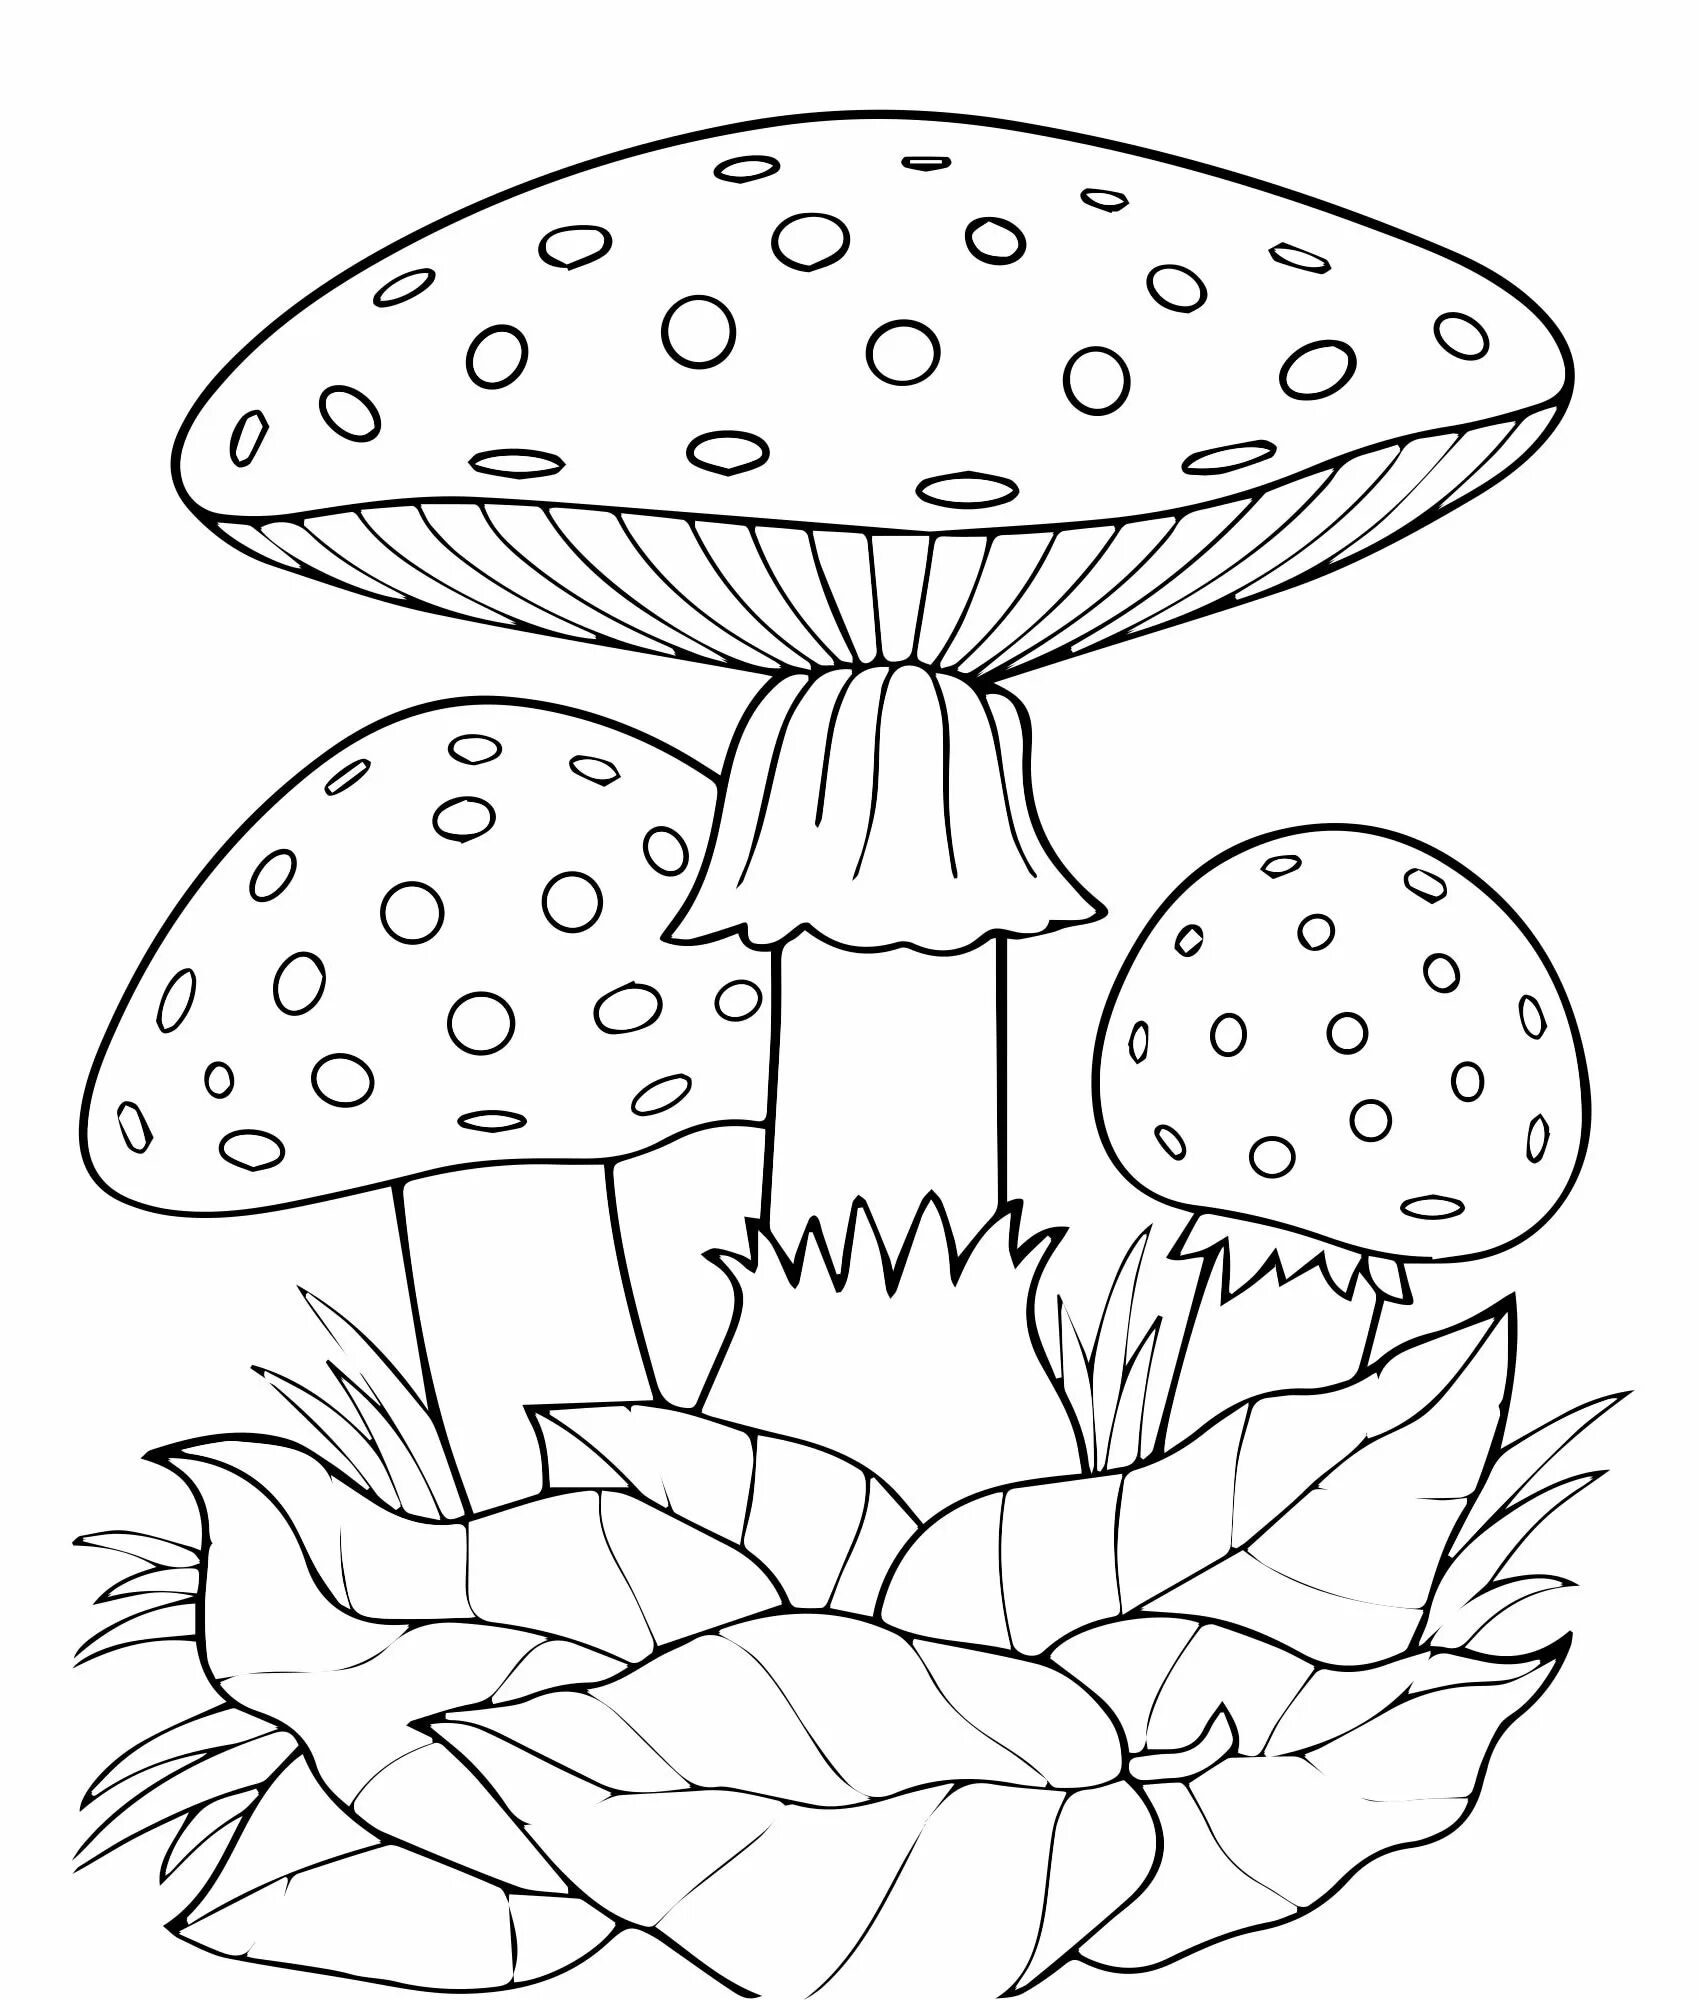 Раскраска Грибы для детей. Раскрасить грибы онлайн.